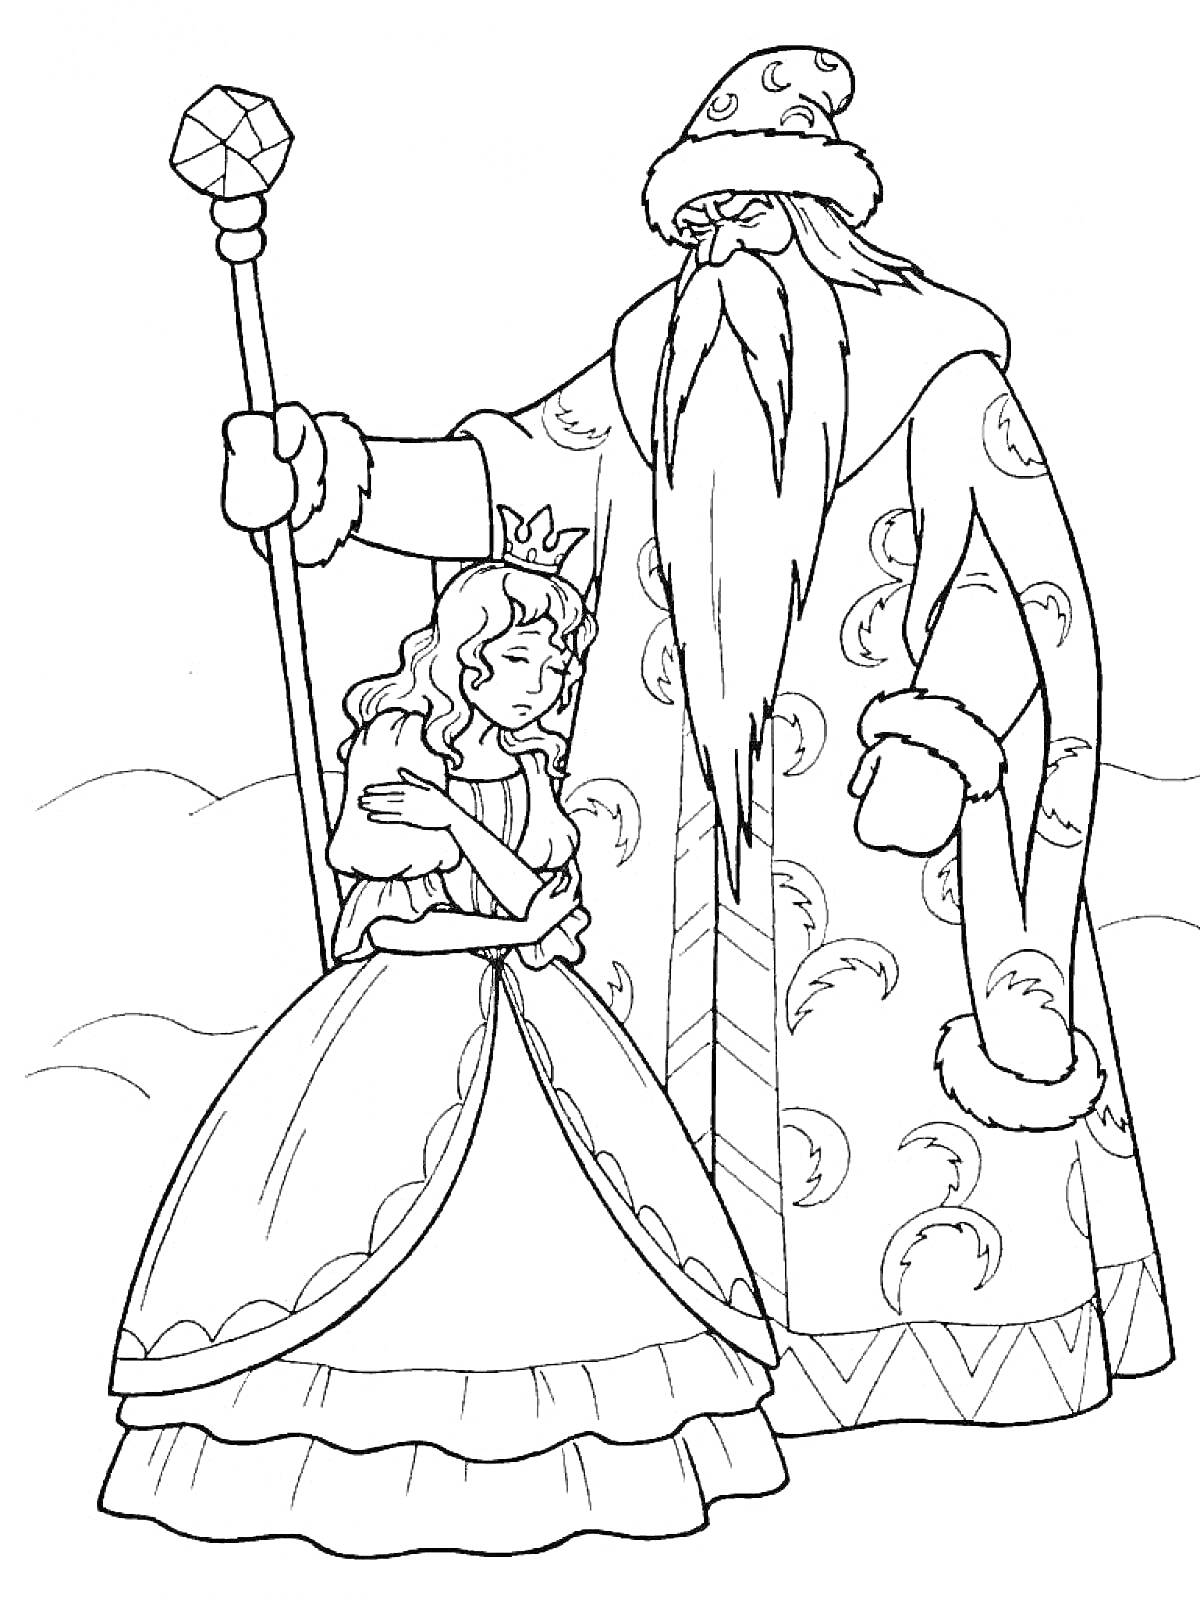 Двенадцать месяцев: девушка в короне и старик с длинной бородой, в долгой шубе, с посохом